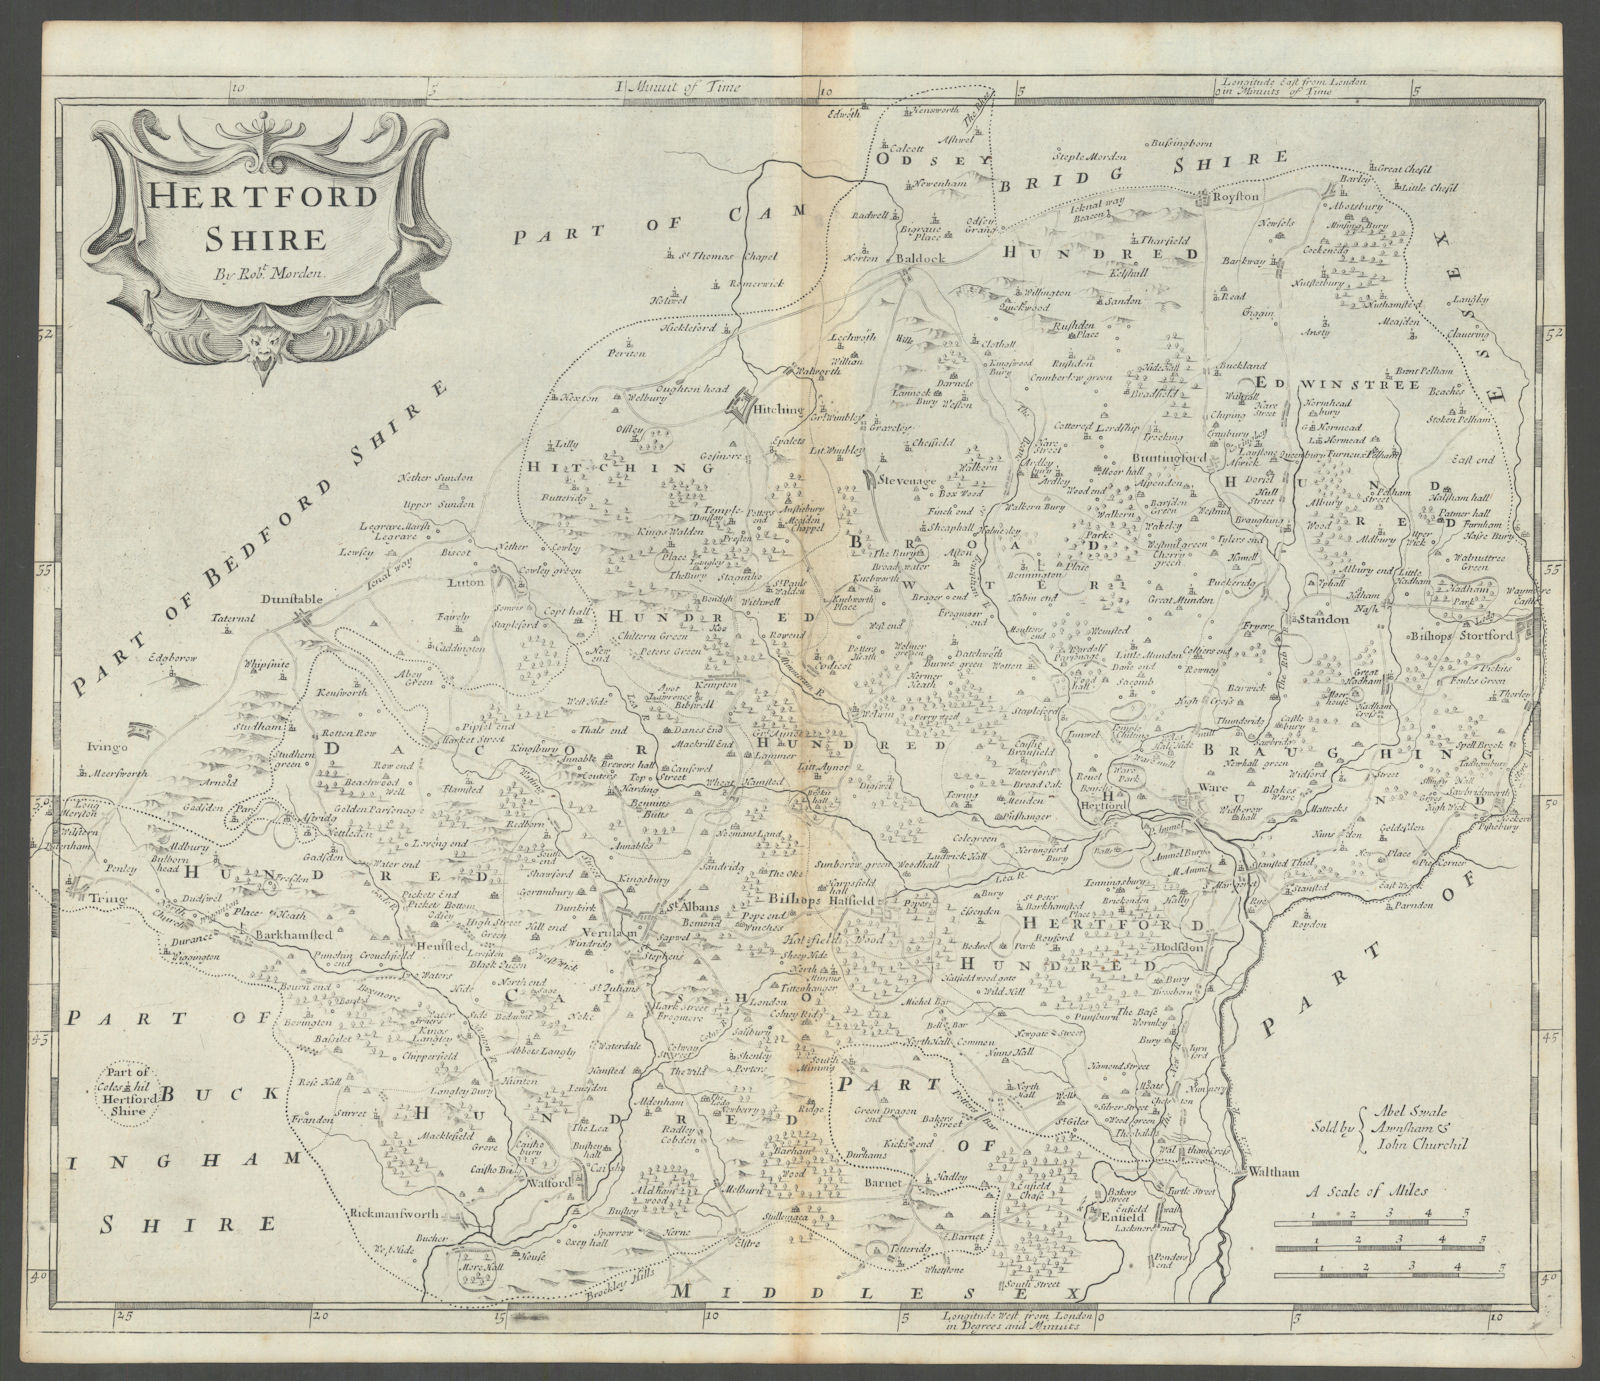 Hertfordshire. 'HERTFORD SHIRE' by ROBERT MORDEN in Camden's Britannia 1722 map